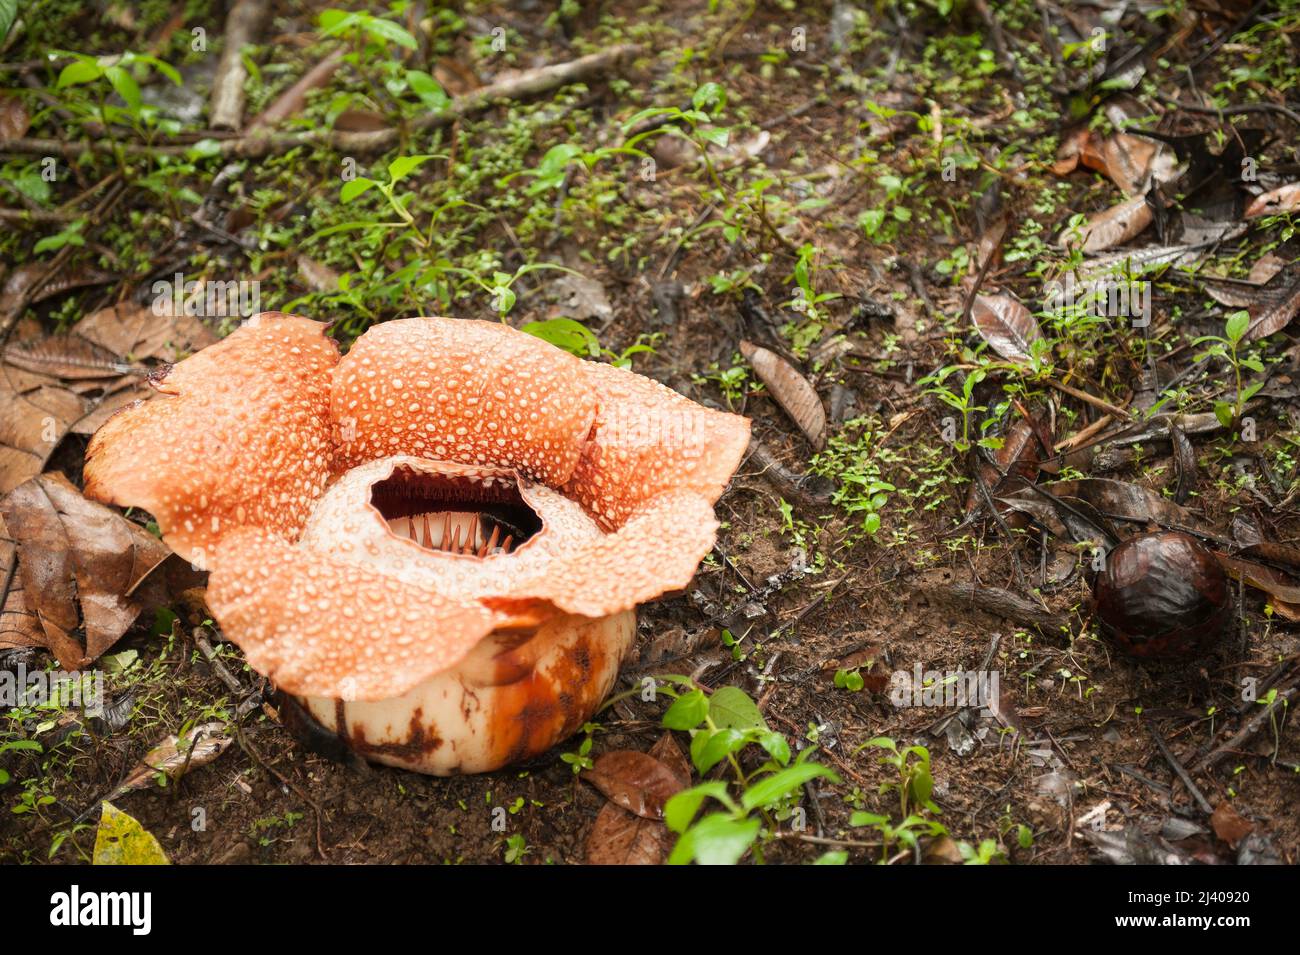 La Rafflesia es una planta parasitaria de los bosques pluviales de Sumatra y Borneo. Tiene la flor individual más grande de la Tierra y un olor muy desagradable. Foto de stock